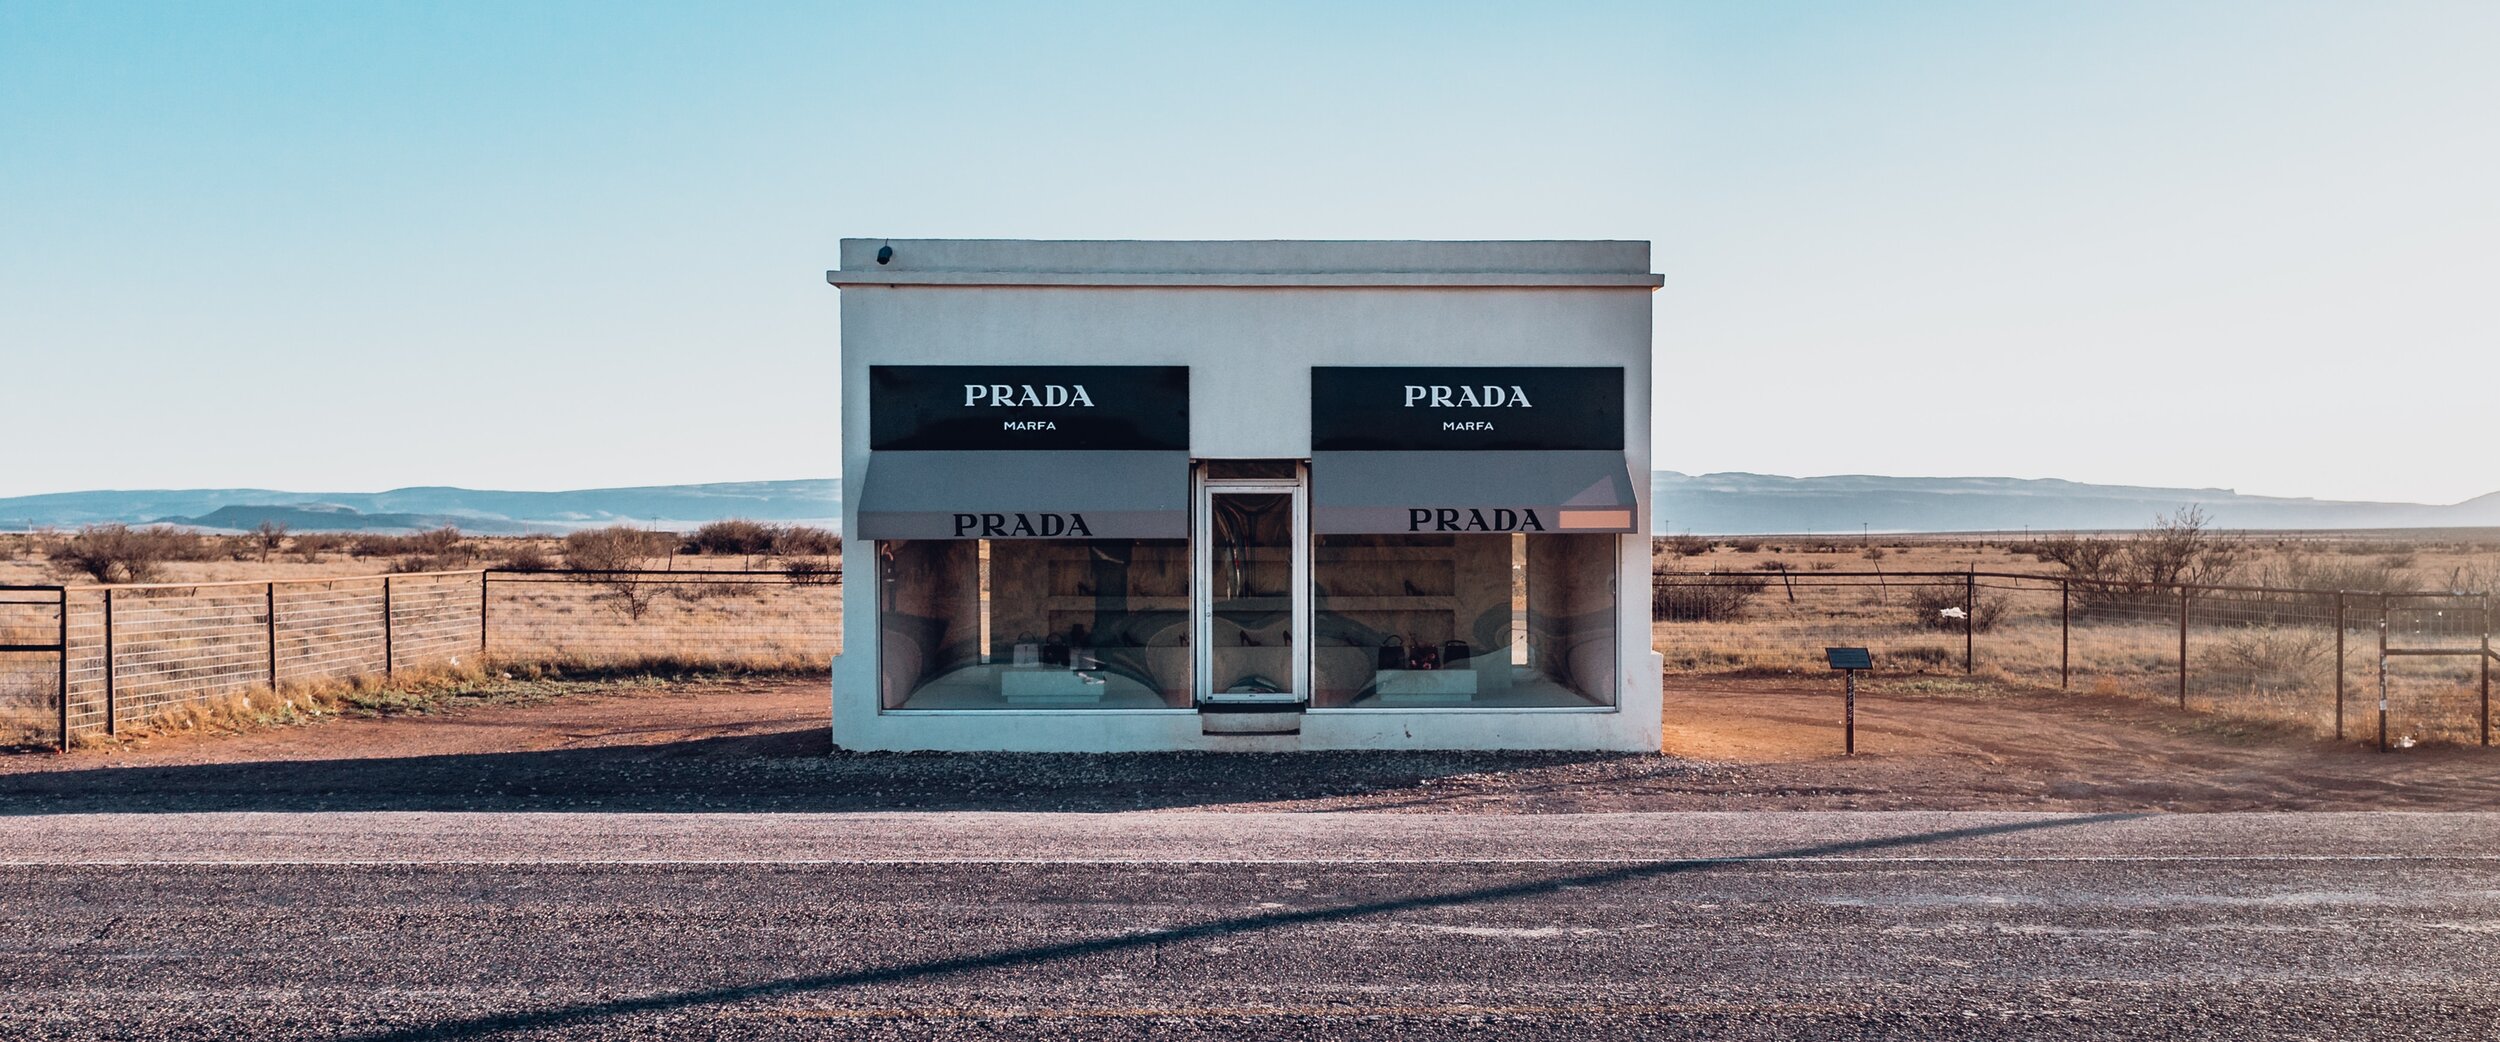 Prada Desert Store, Marfa, Texas, USA — Detour